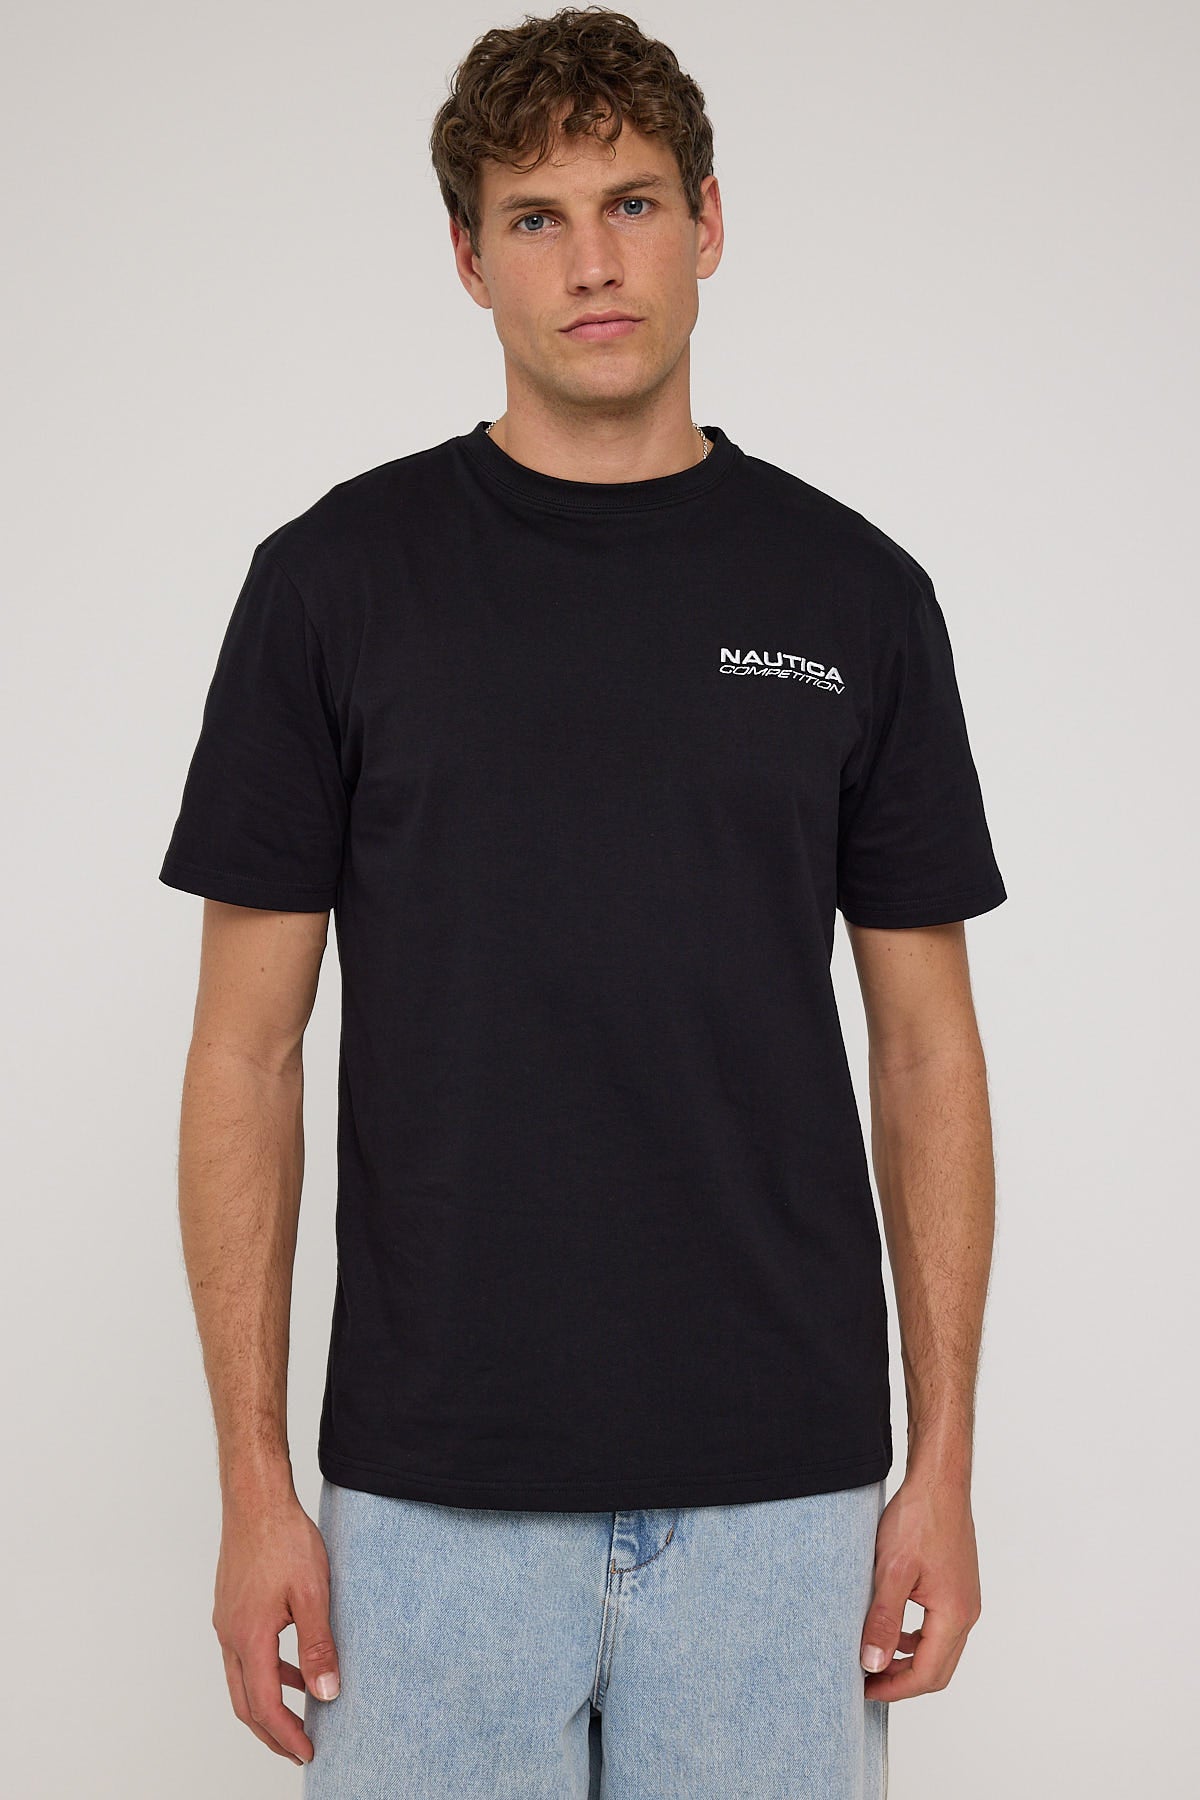 Nautica Bracken T-Shirt Black